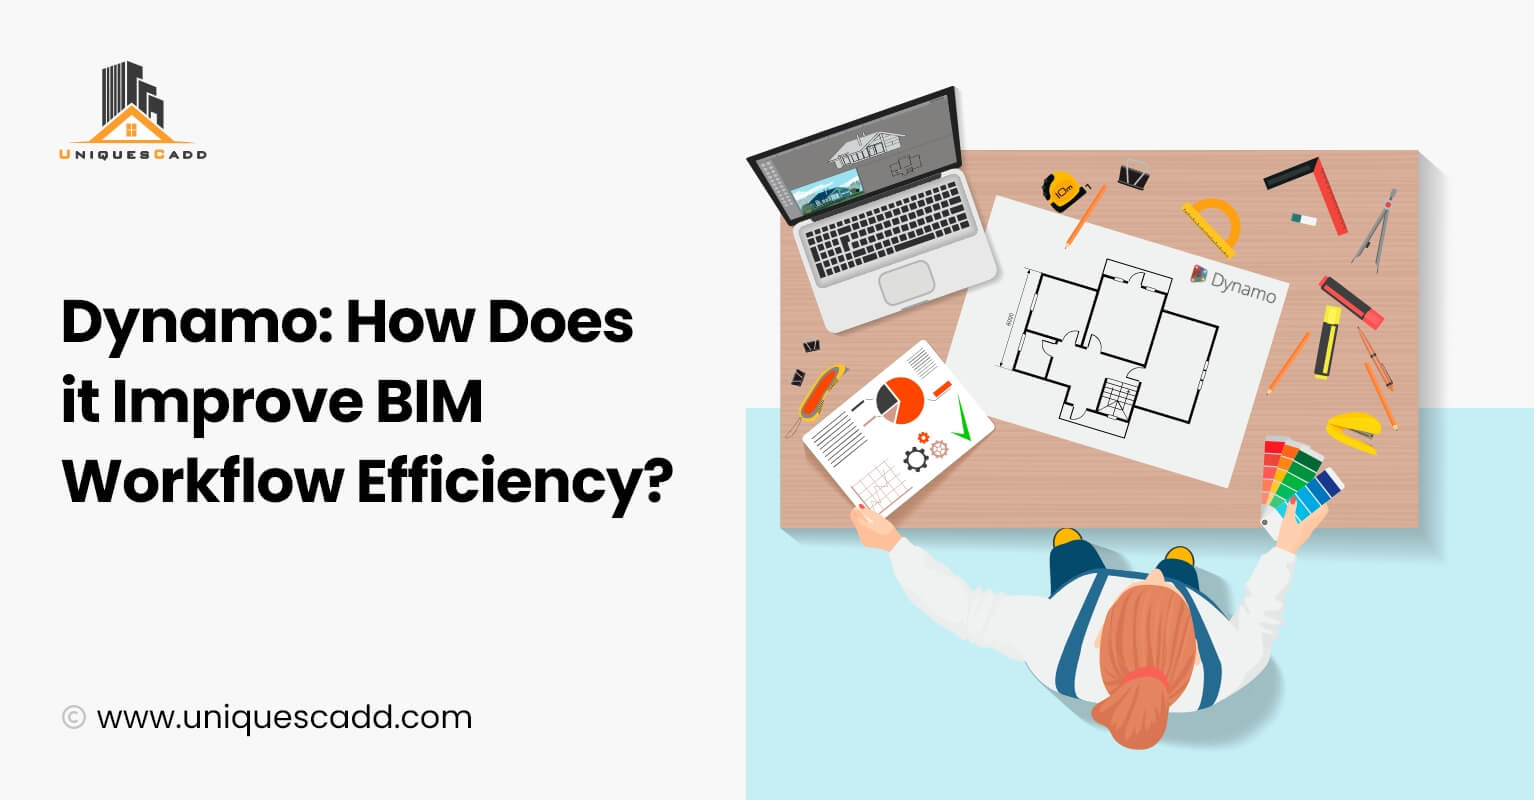 Dynamo: How does it improve BIM workflow efficiency